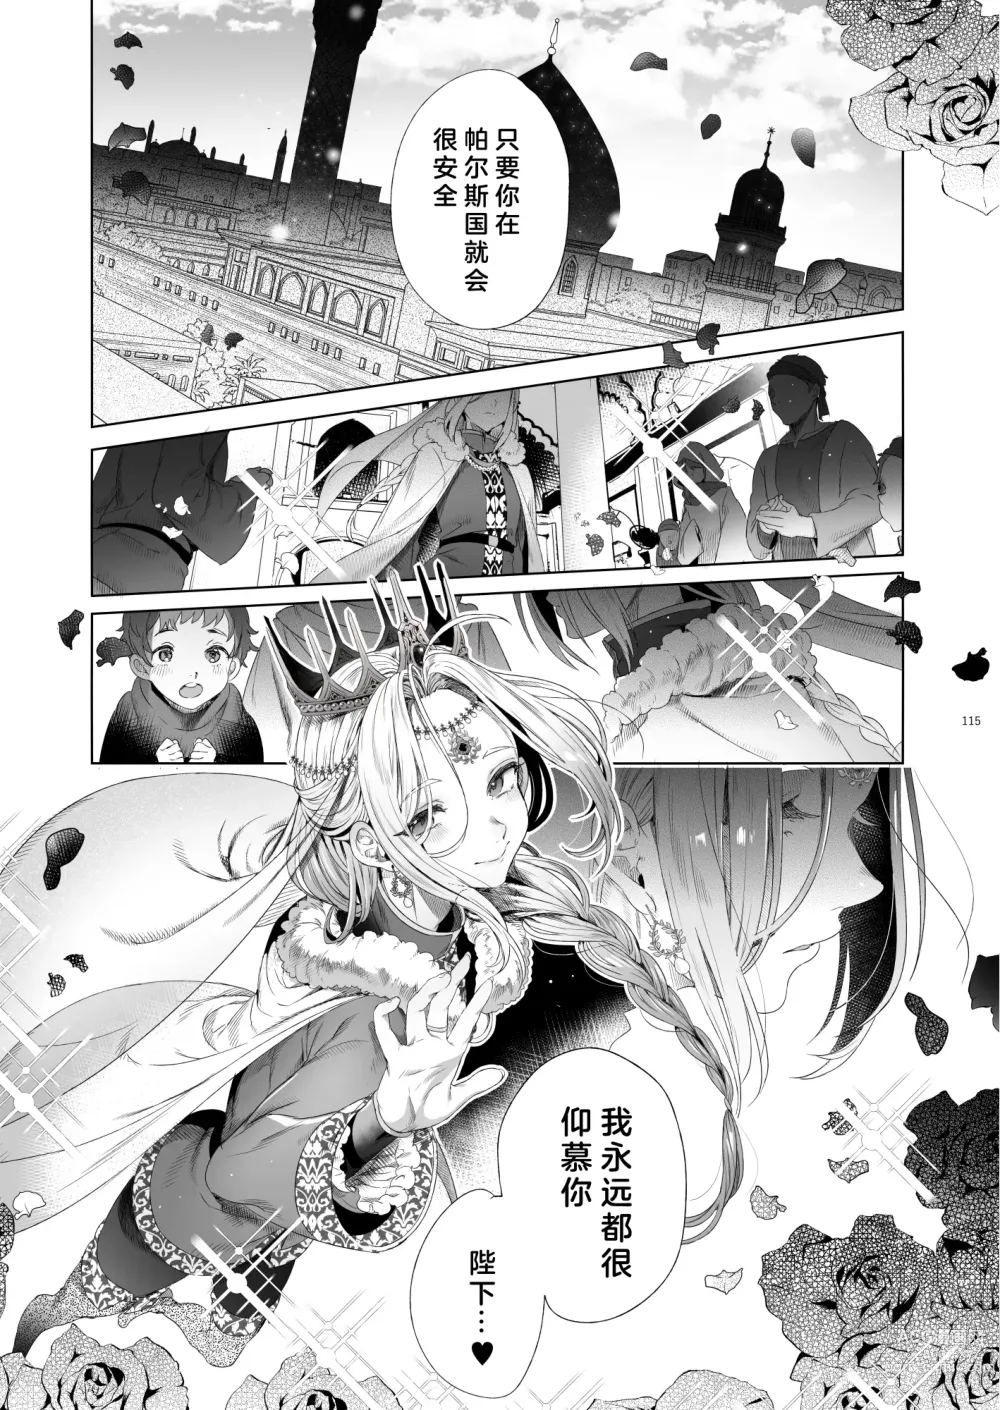 Page 116 of doujinshi Niedenka